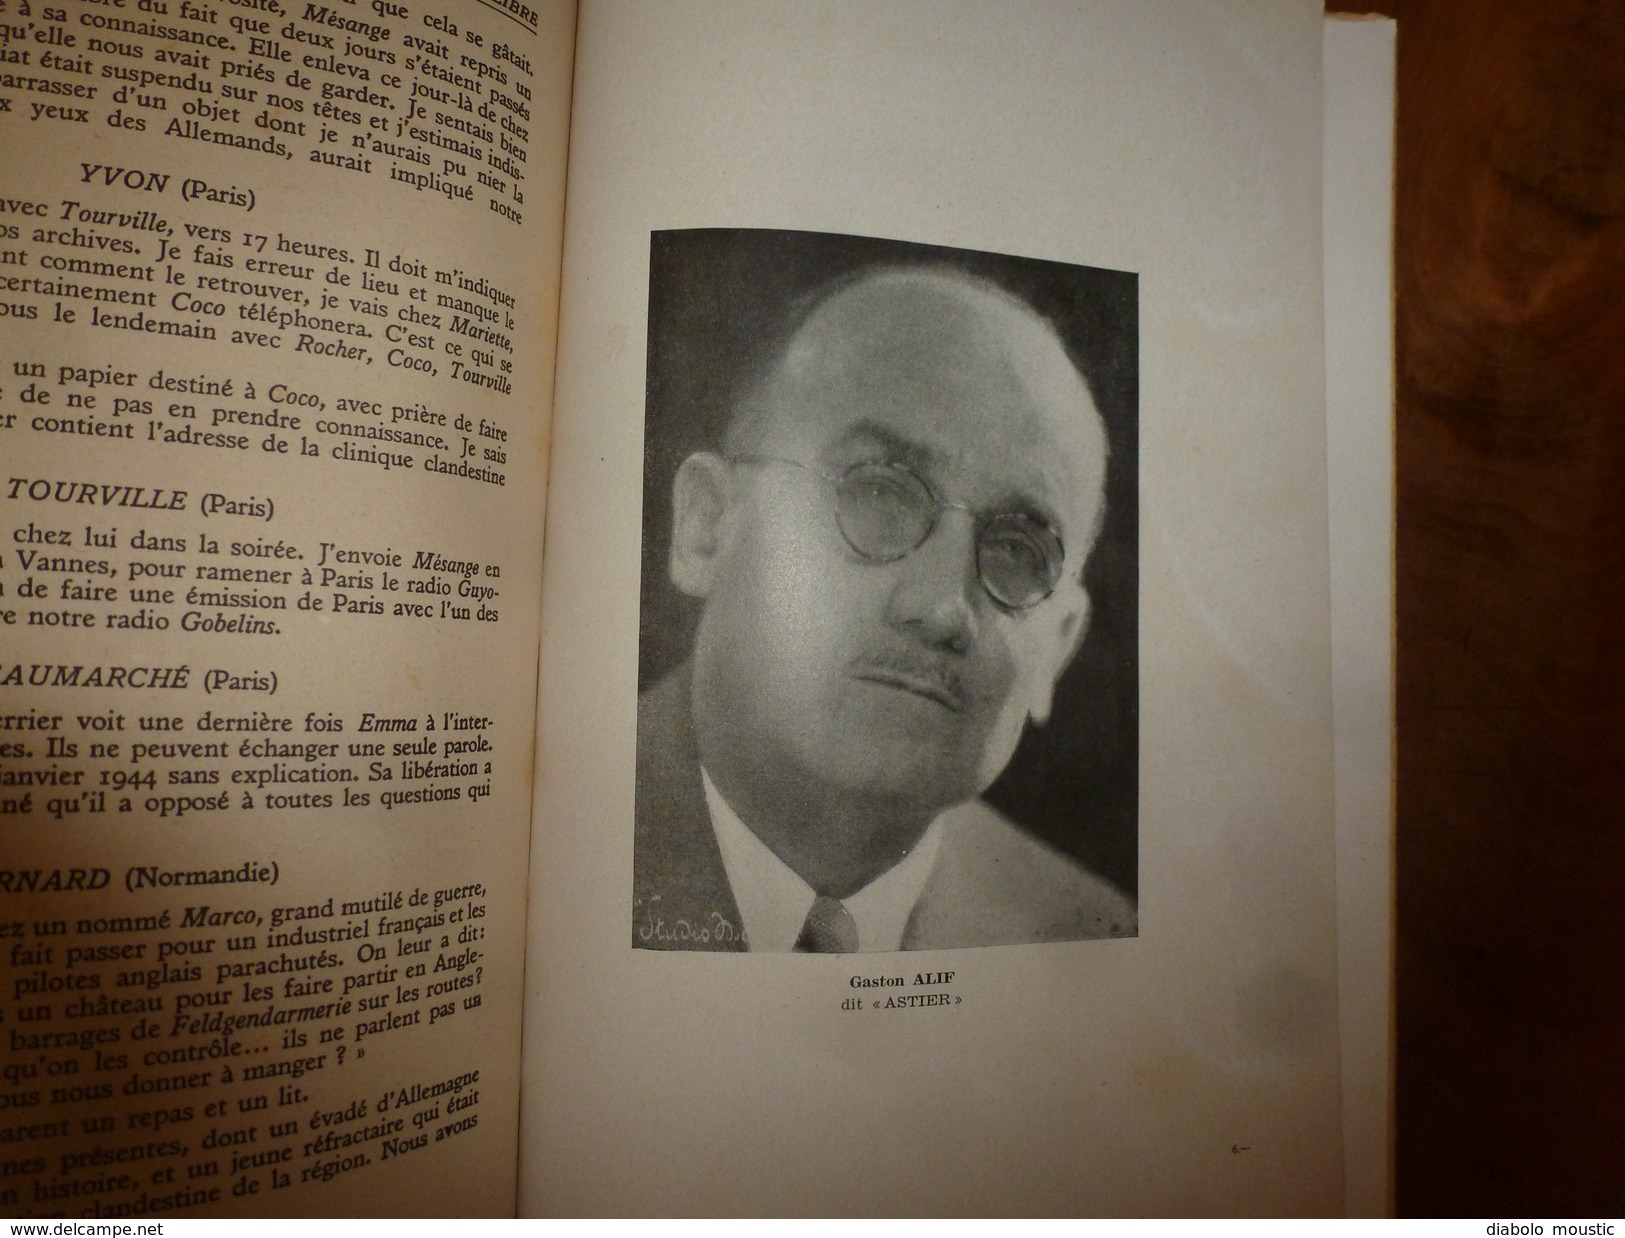 1947 UNE AFFAIRE DE TRAHISON par REMY dédicacé à Charles Breton CHEF RESISTANT,pour service rendu à l'OCM,photographies